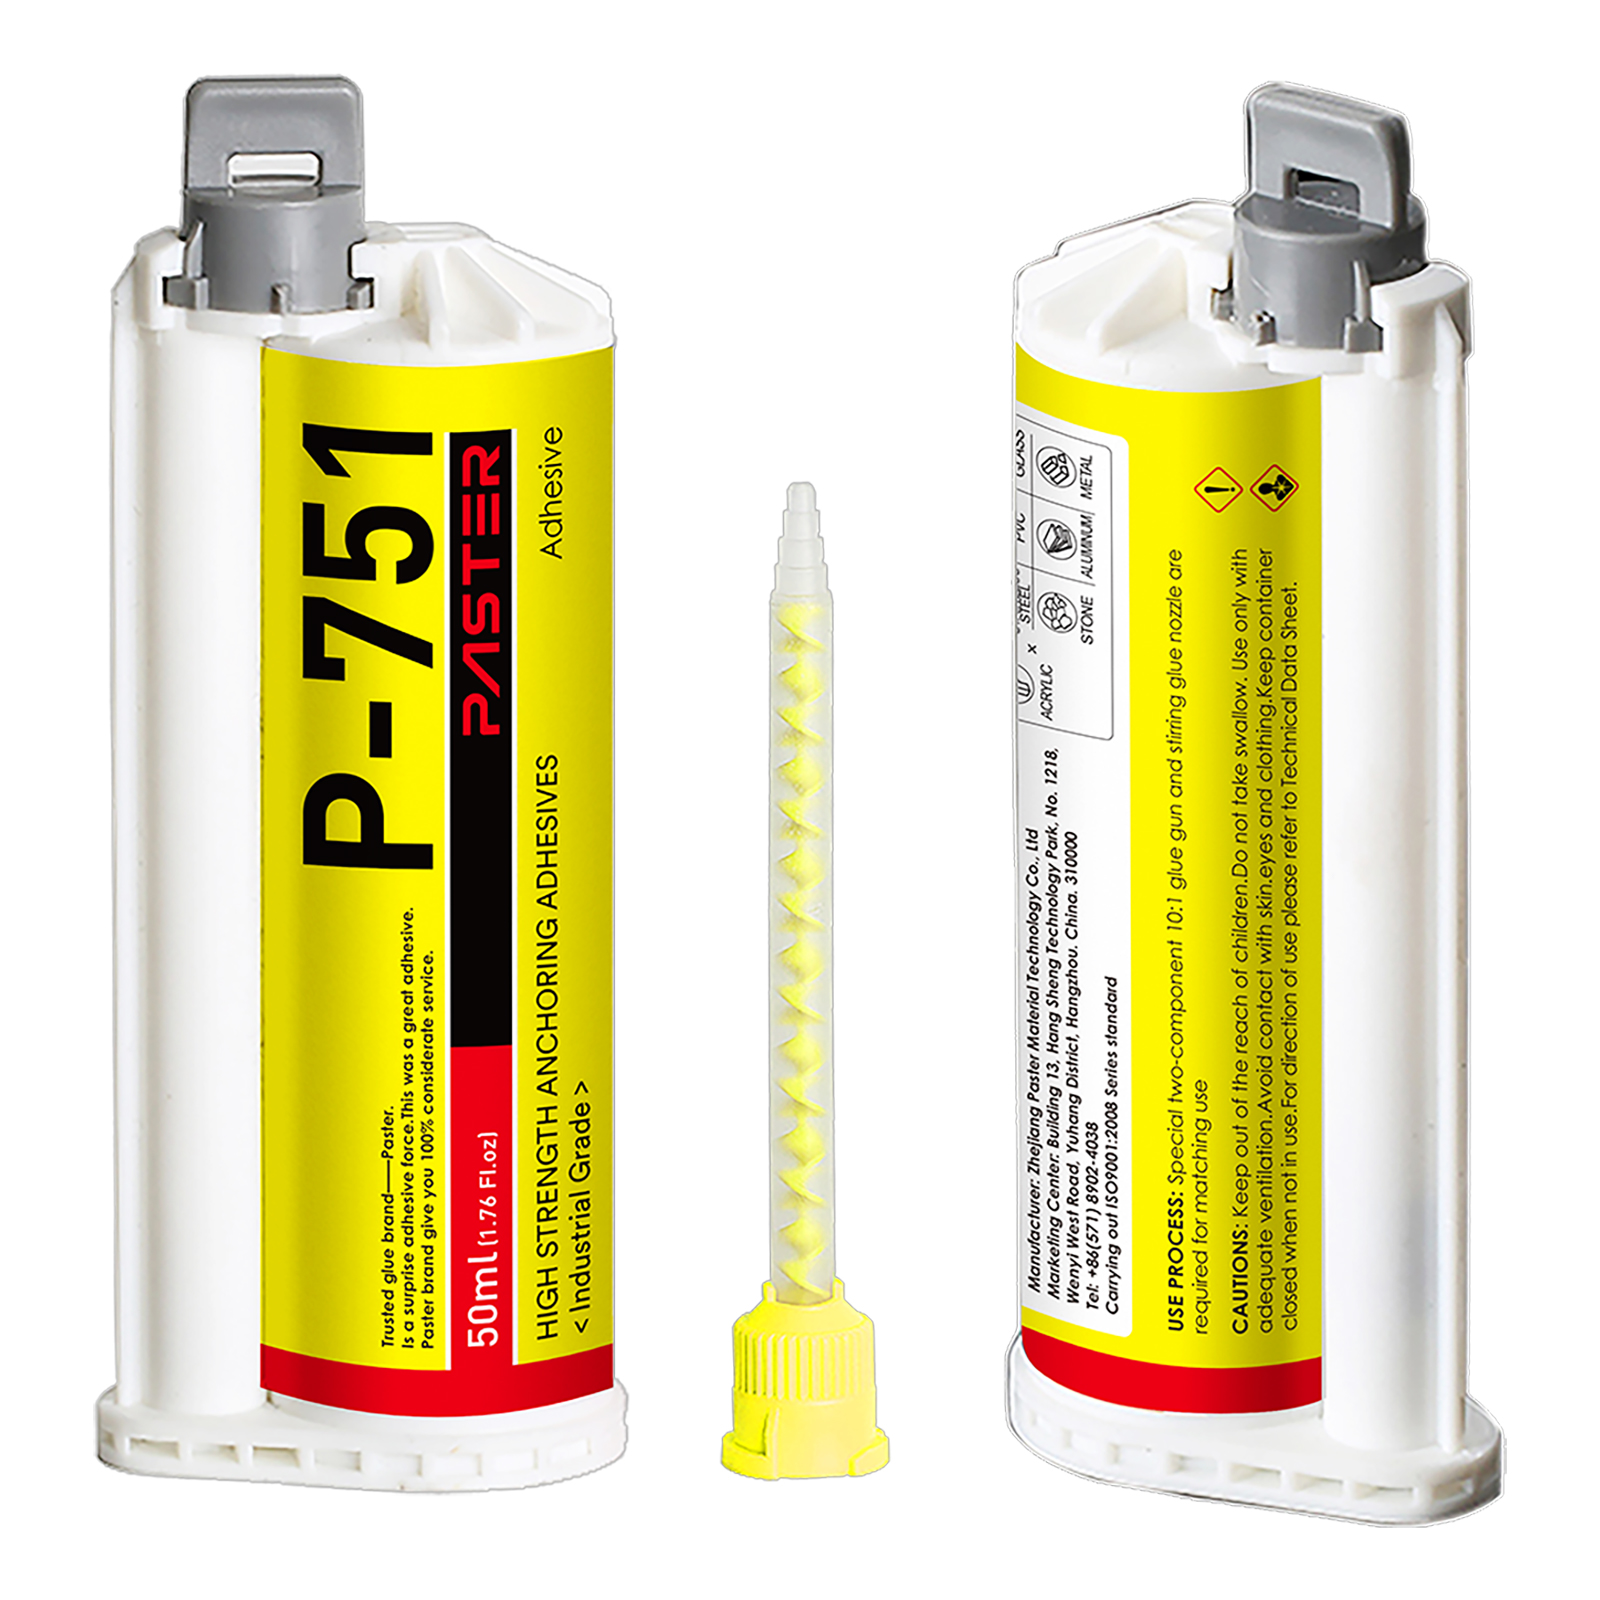 Sample-P-751 Signage adhesive Acrylic adhesive High Strength Anchoring Adhesives 10:1 AB glue